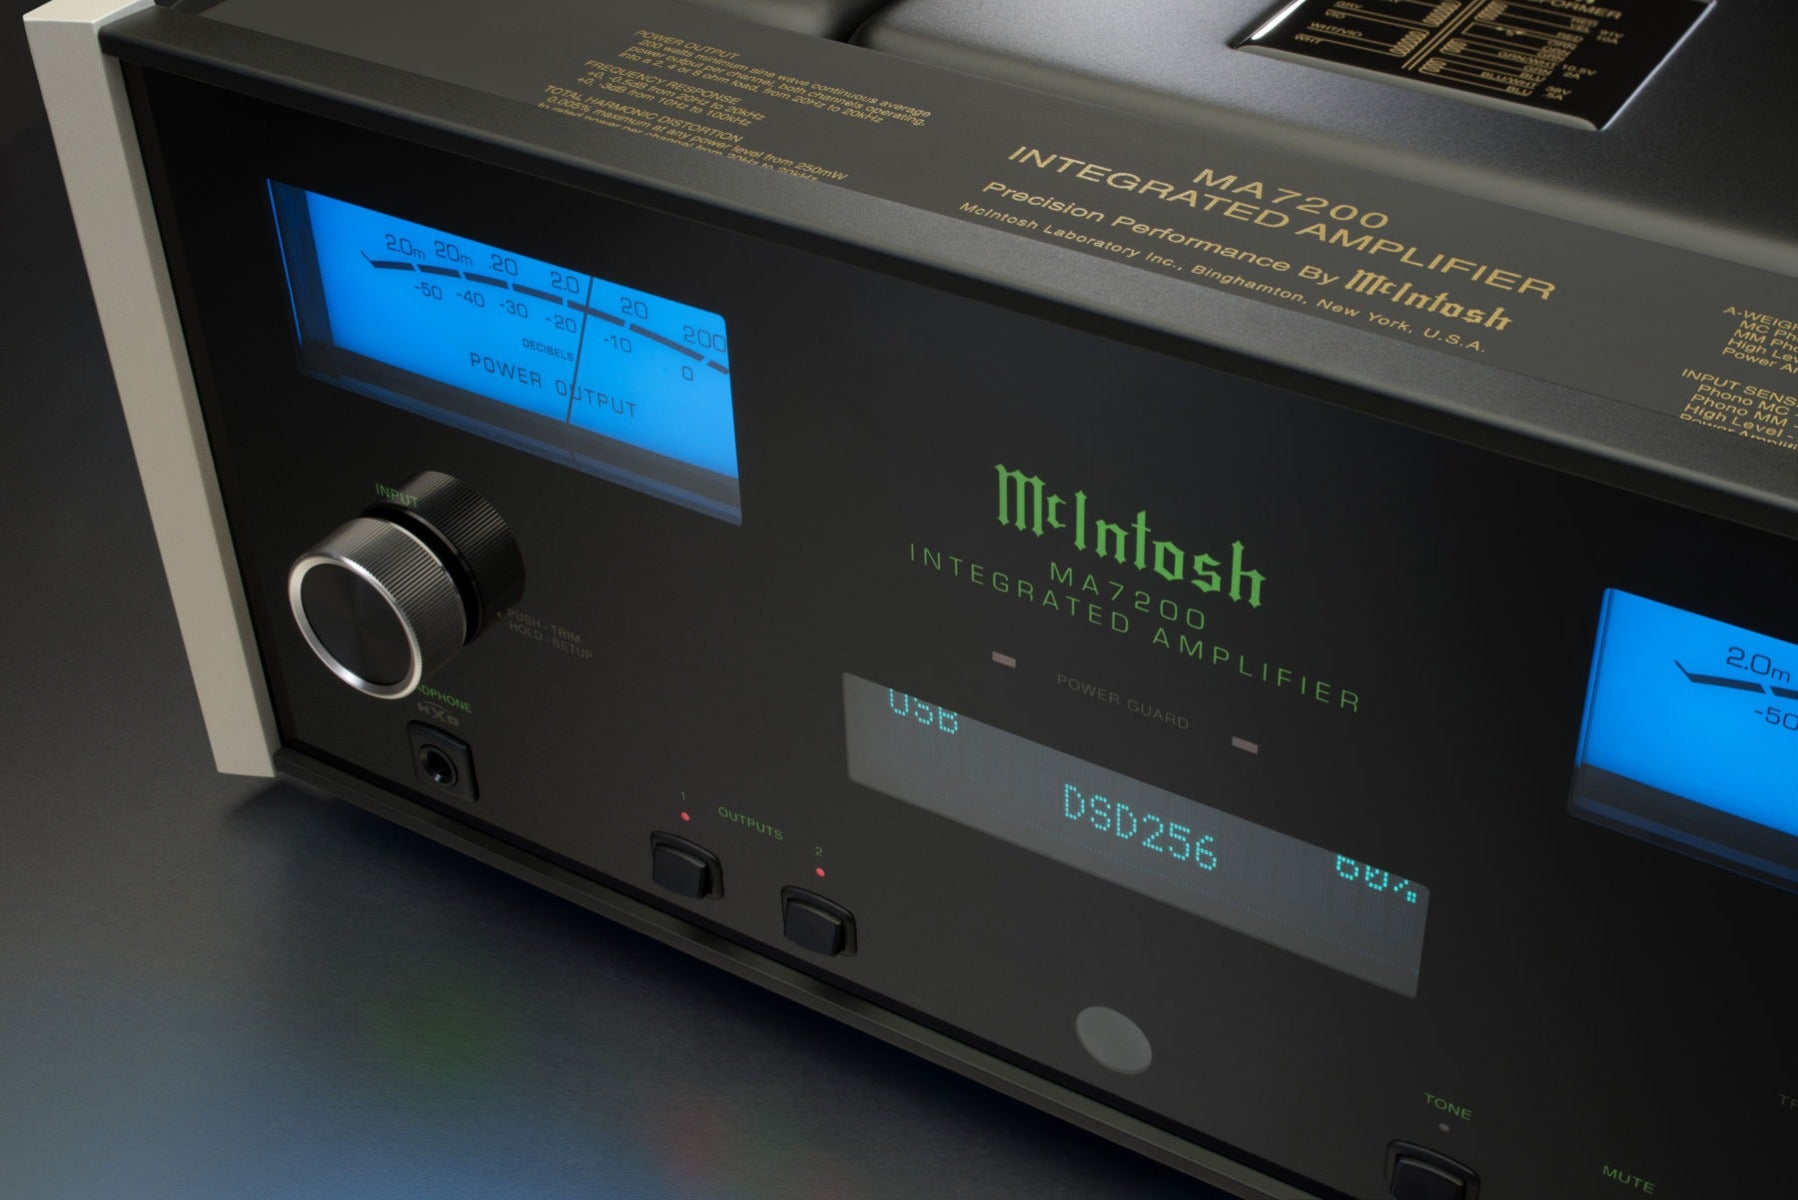 McIntosh MA7200 Integrated Amplifier